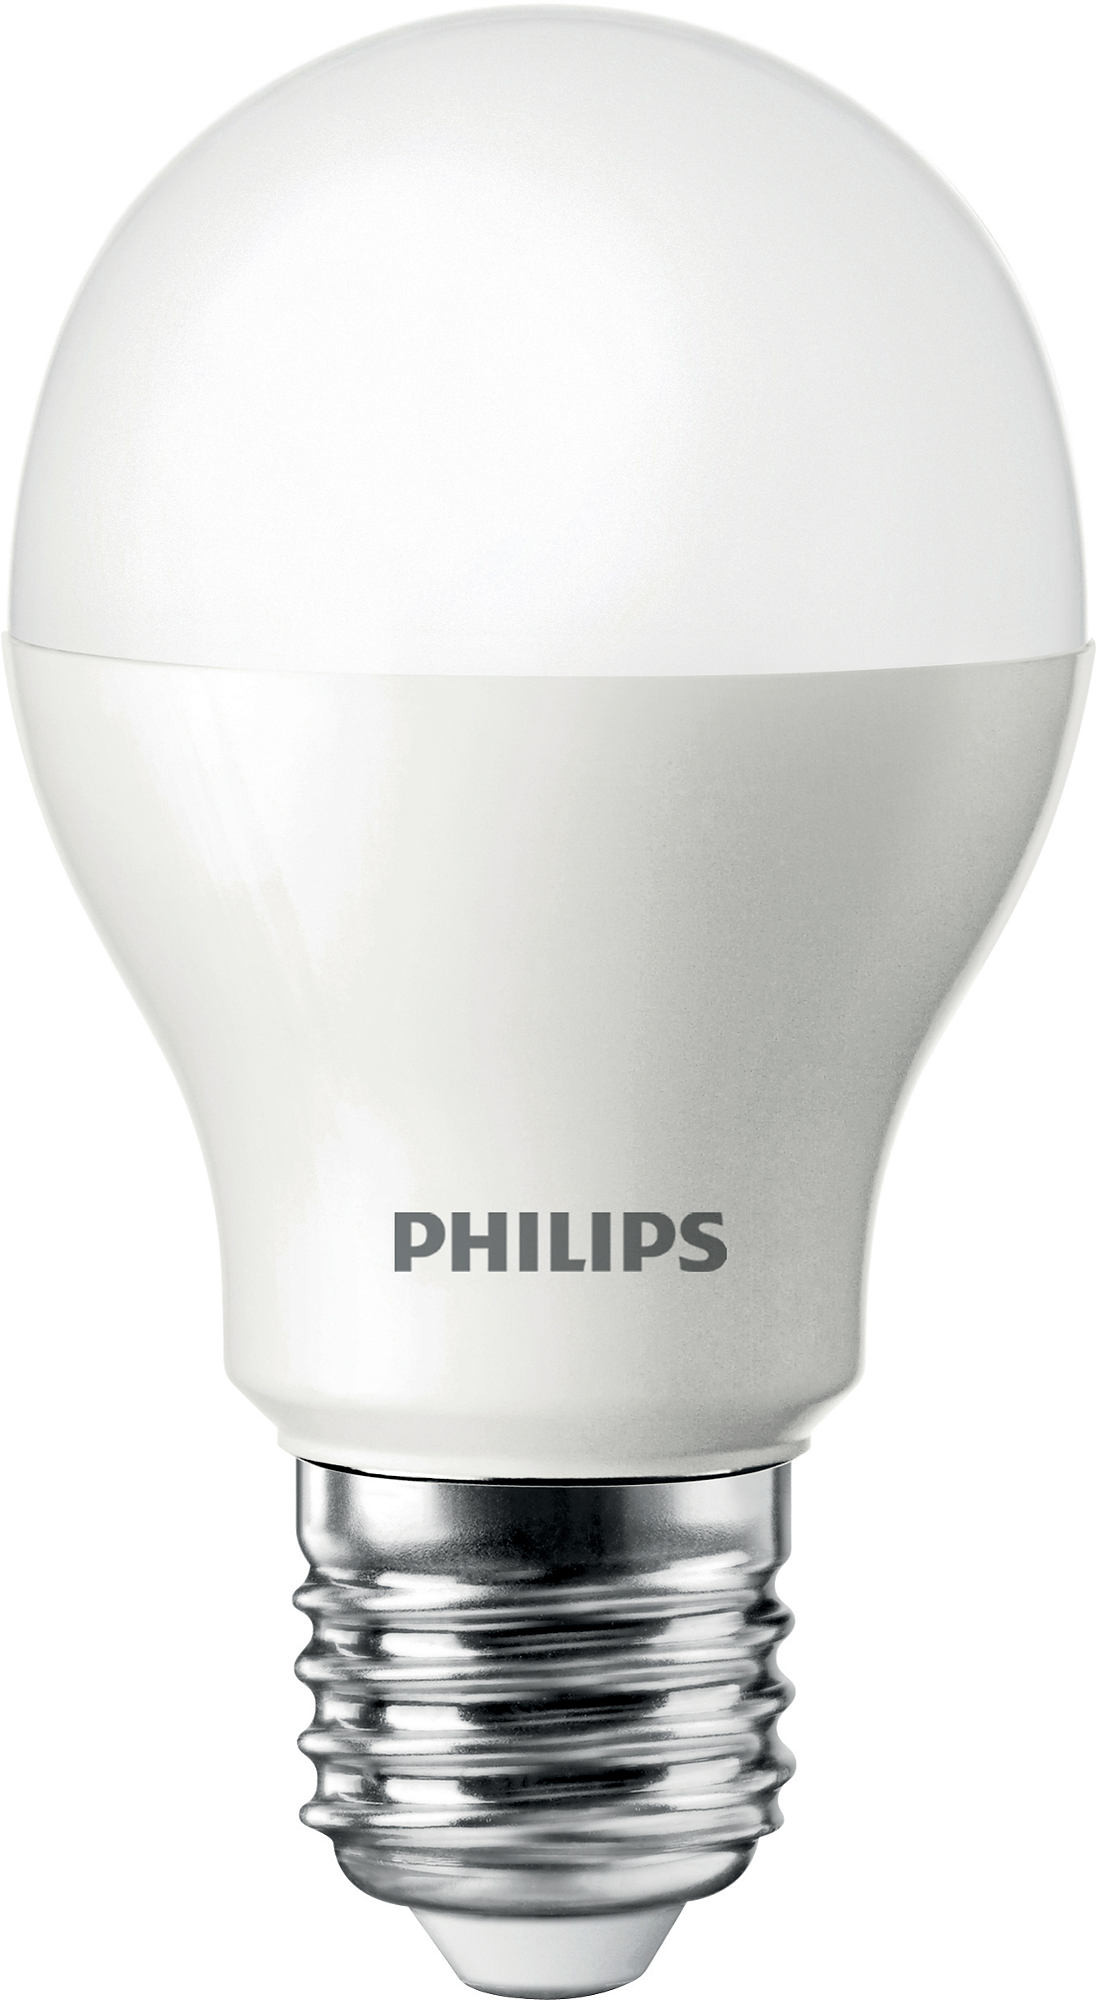 Philips CorePro LEDbulb 9-60W E27 827